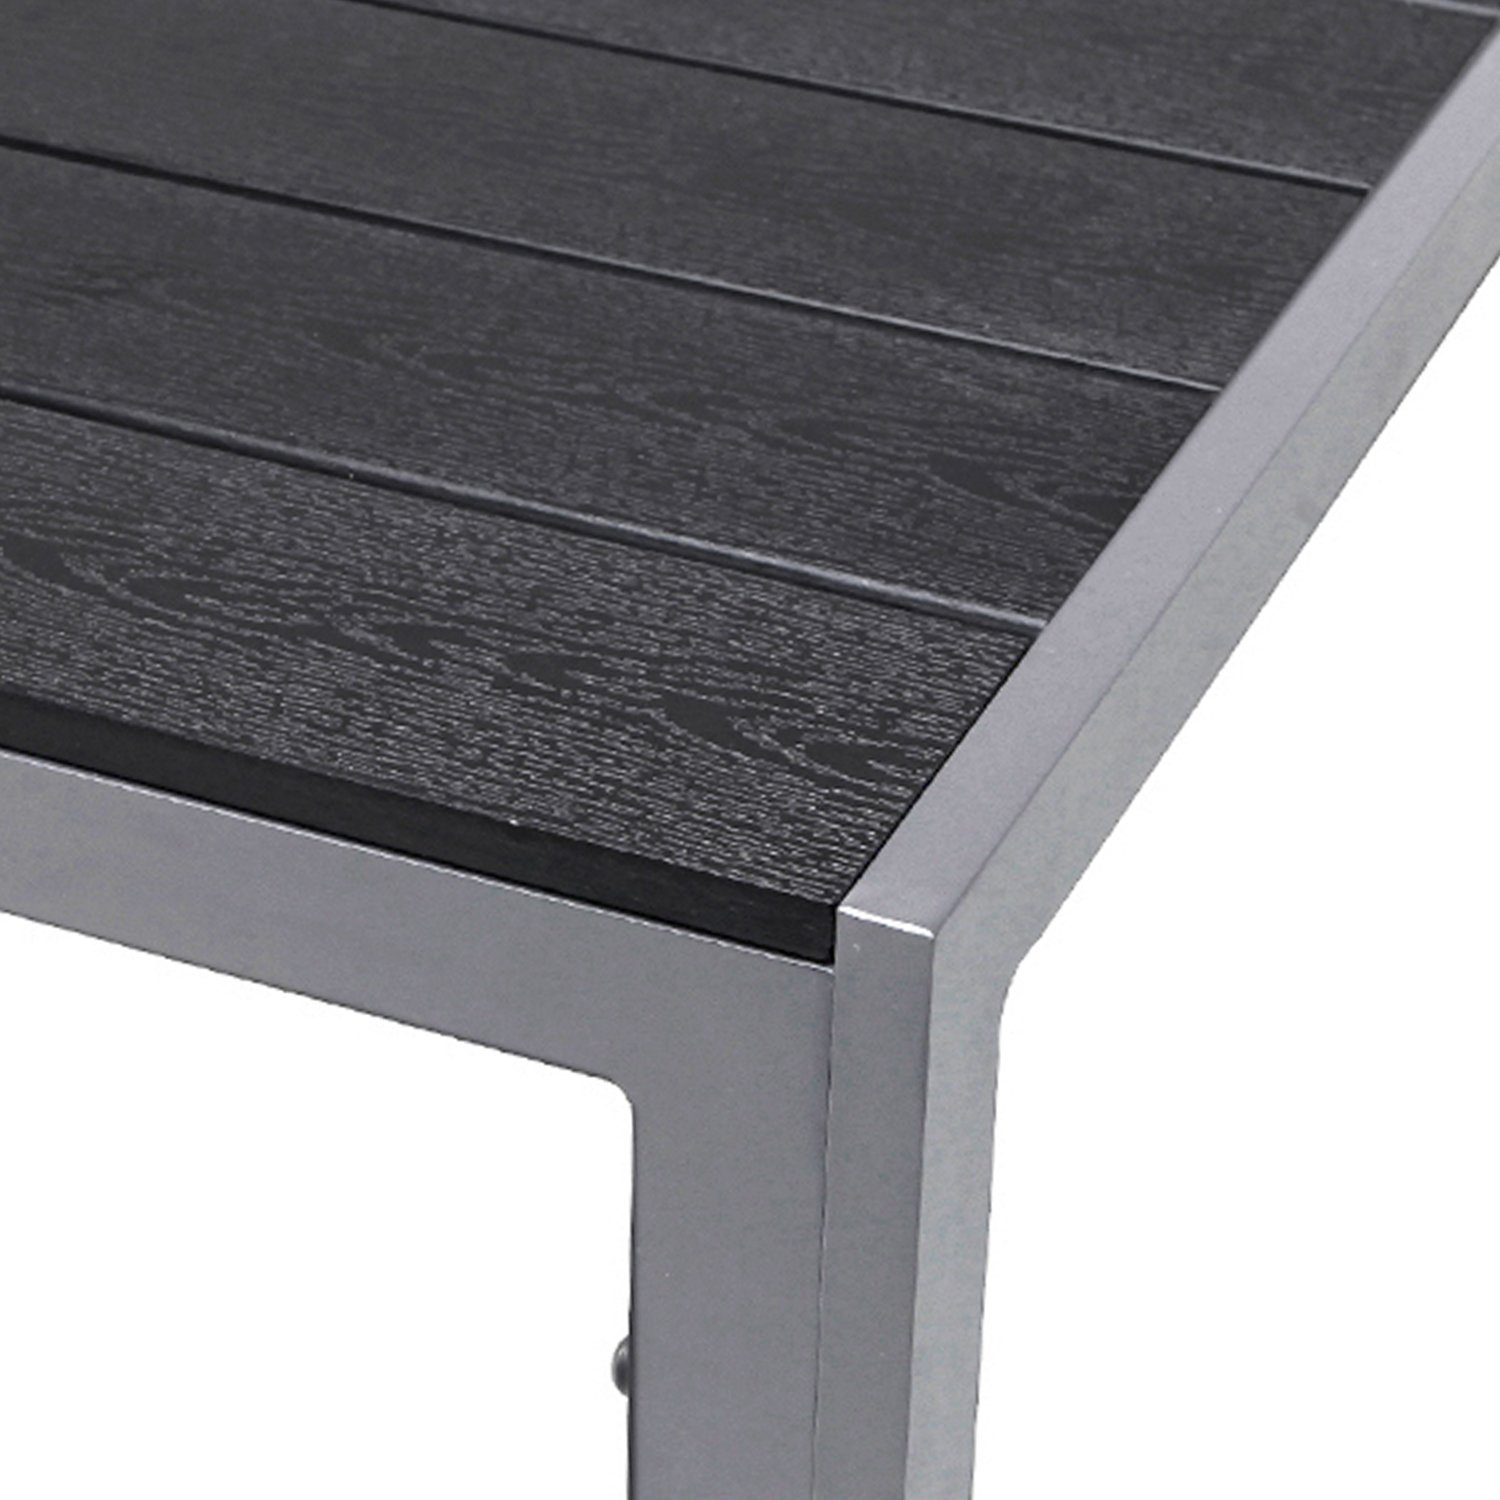 Non-Wood Küchentisch / Aluminium Gartentisch XL 180x90cm INDA-Exclusiv Schwarz Silber